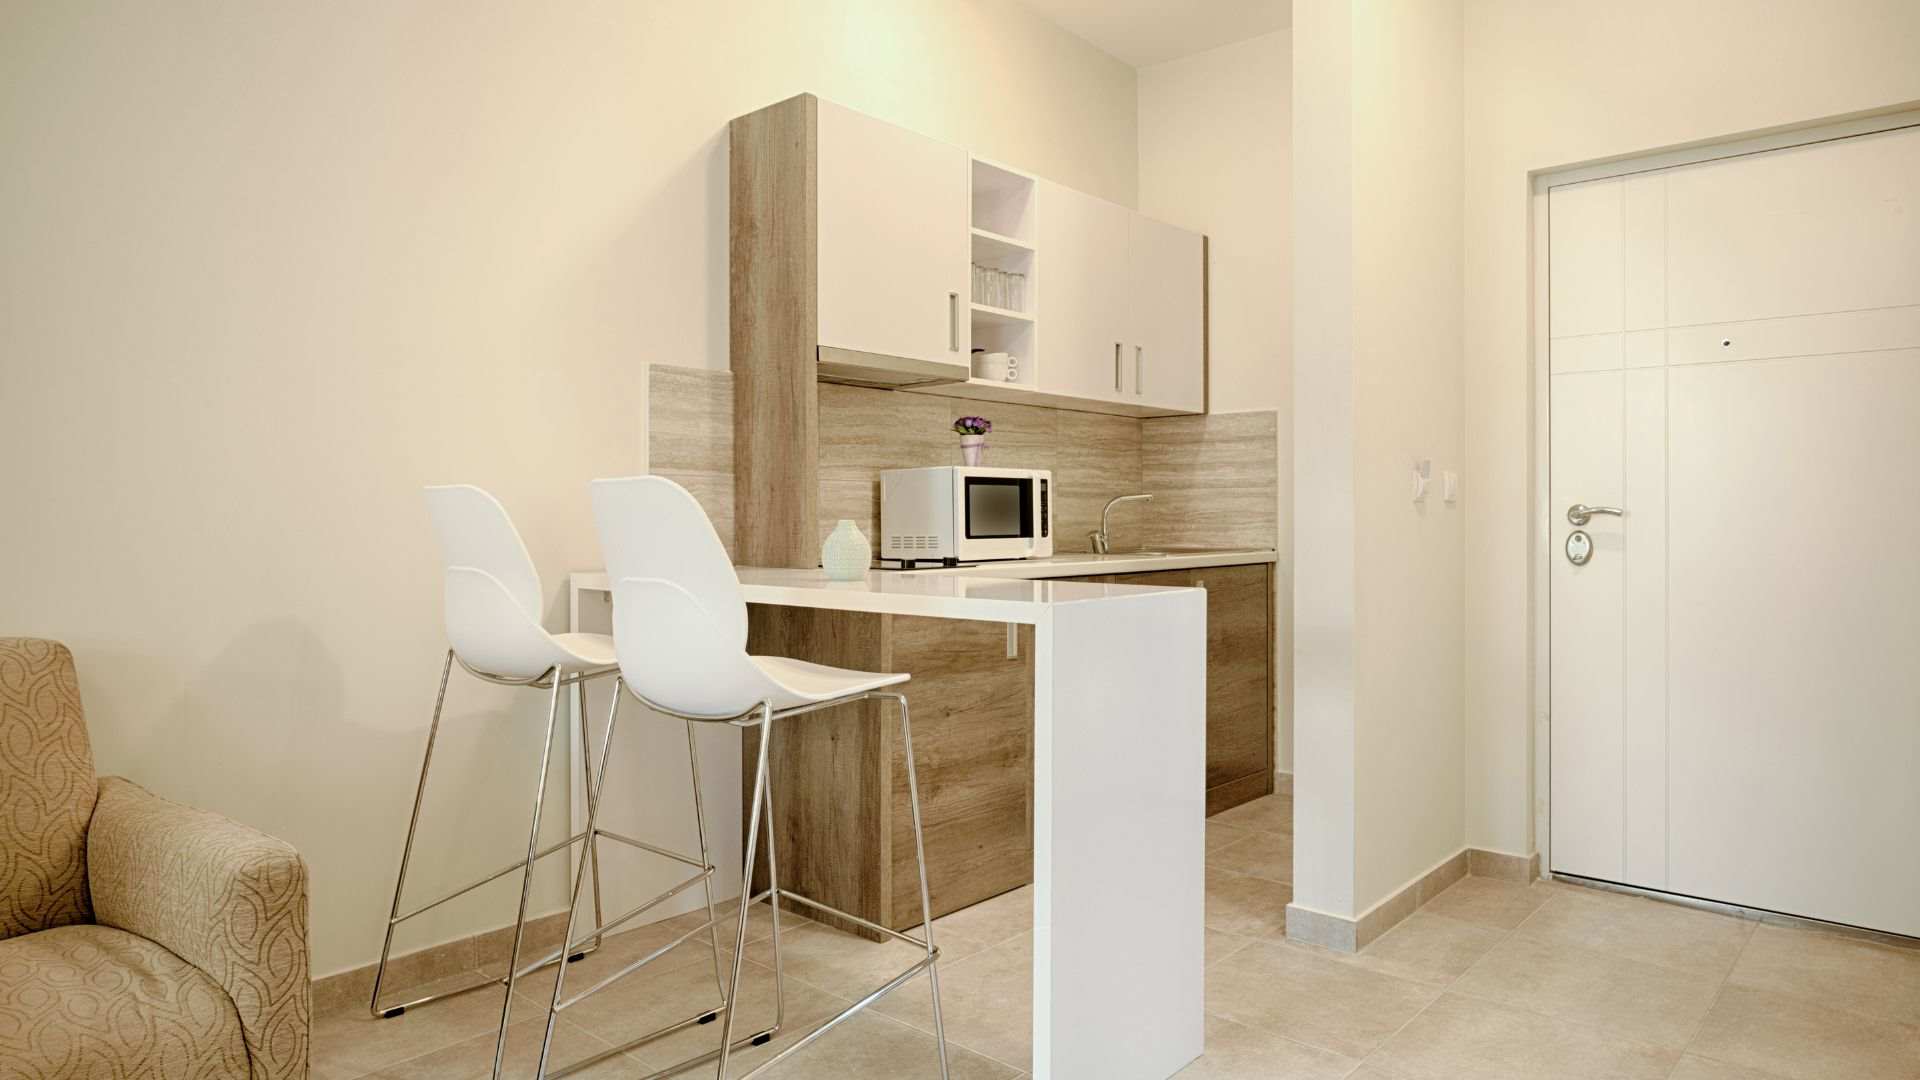 Mẫu 3: Thiết kế nội thất nhà bếp chung cư bằng gỗ công nghiệp